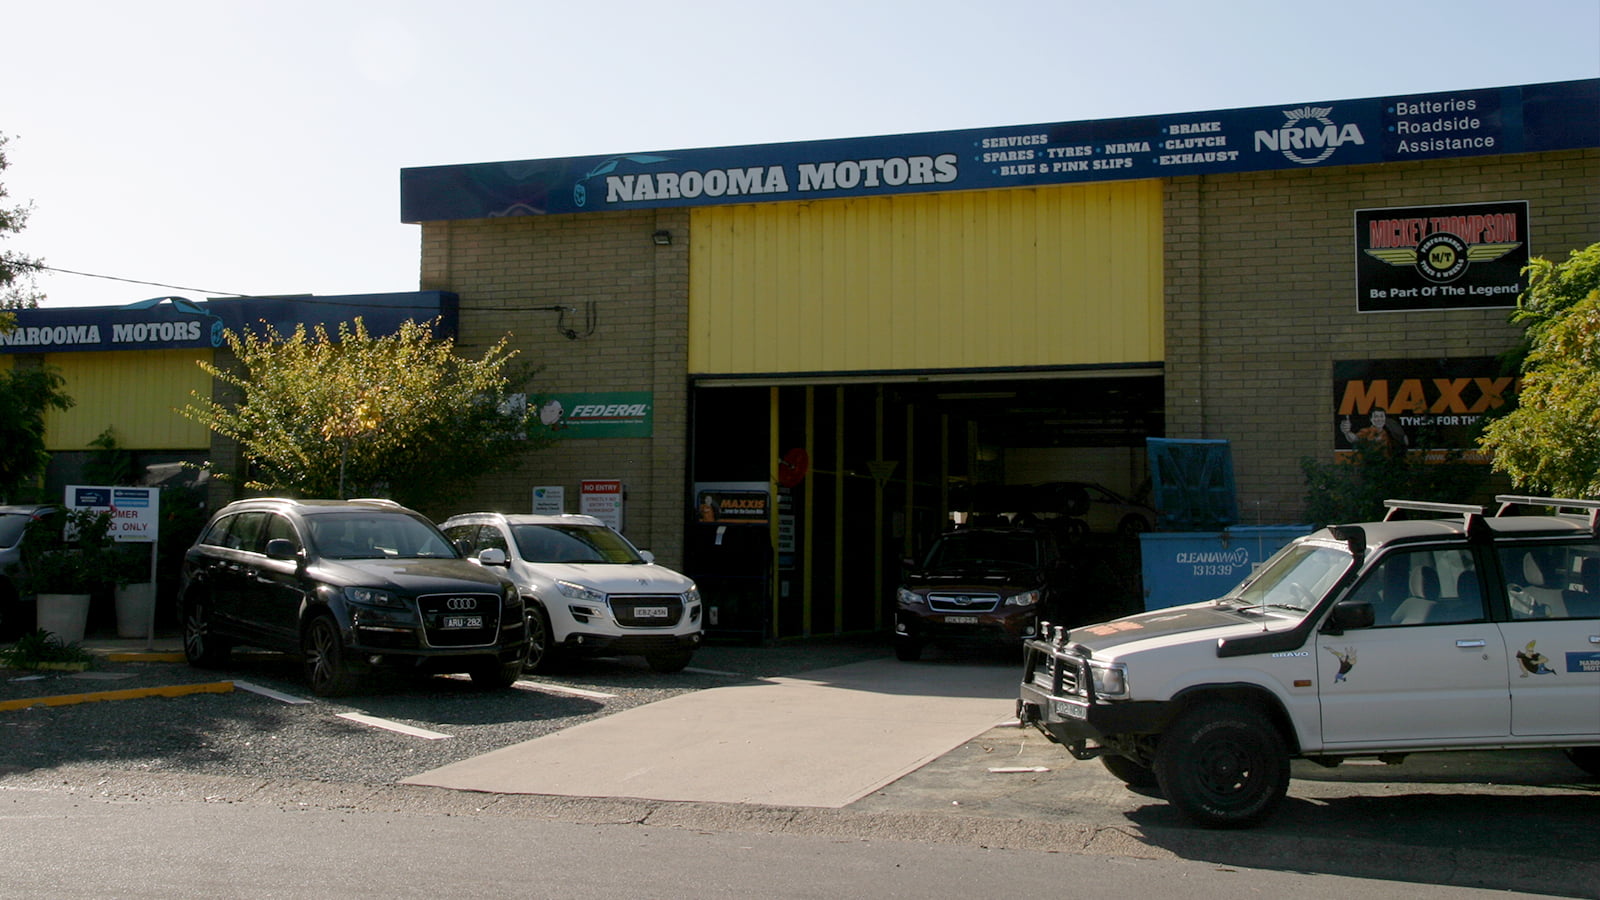 Narooma Motors NRMA Service Centre